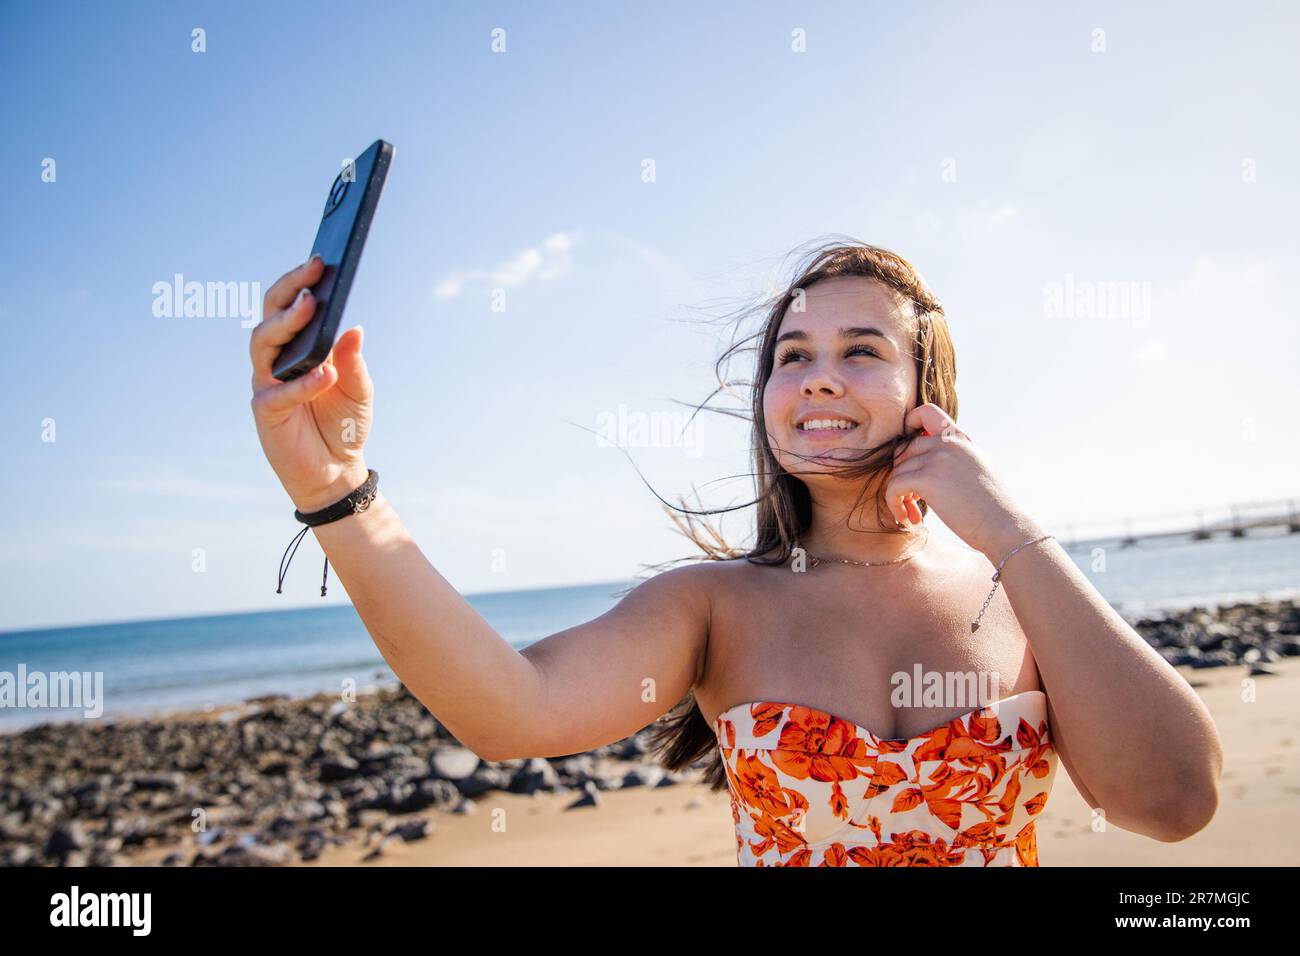 Una ragazza adolescente prende un selfie alla spiaggia in una giornata ventosa Foto Stock